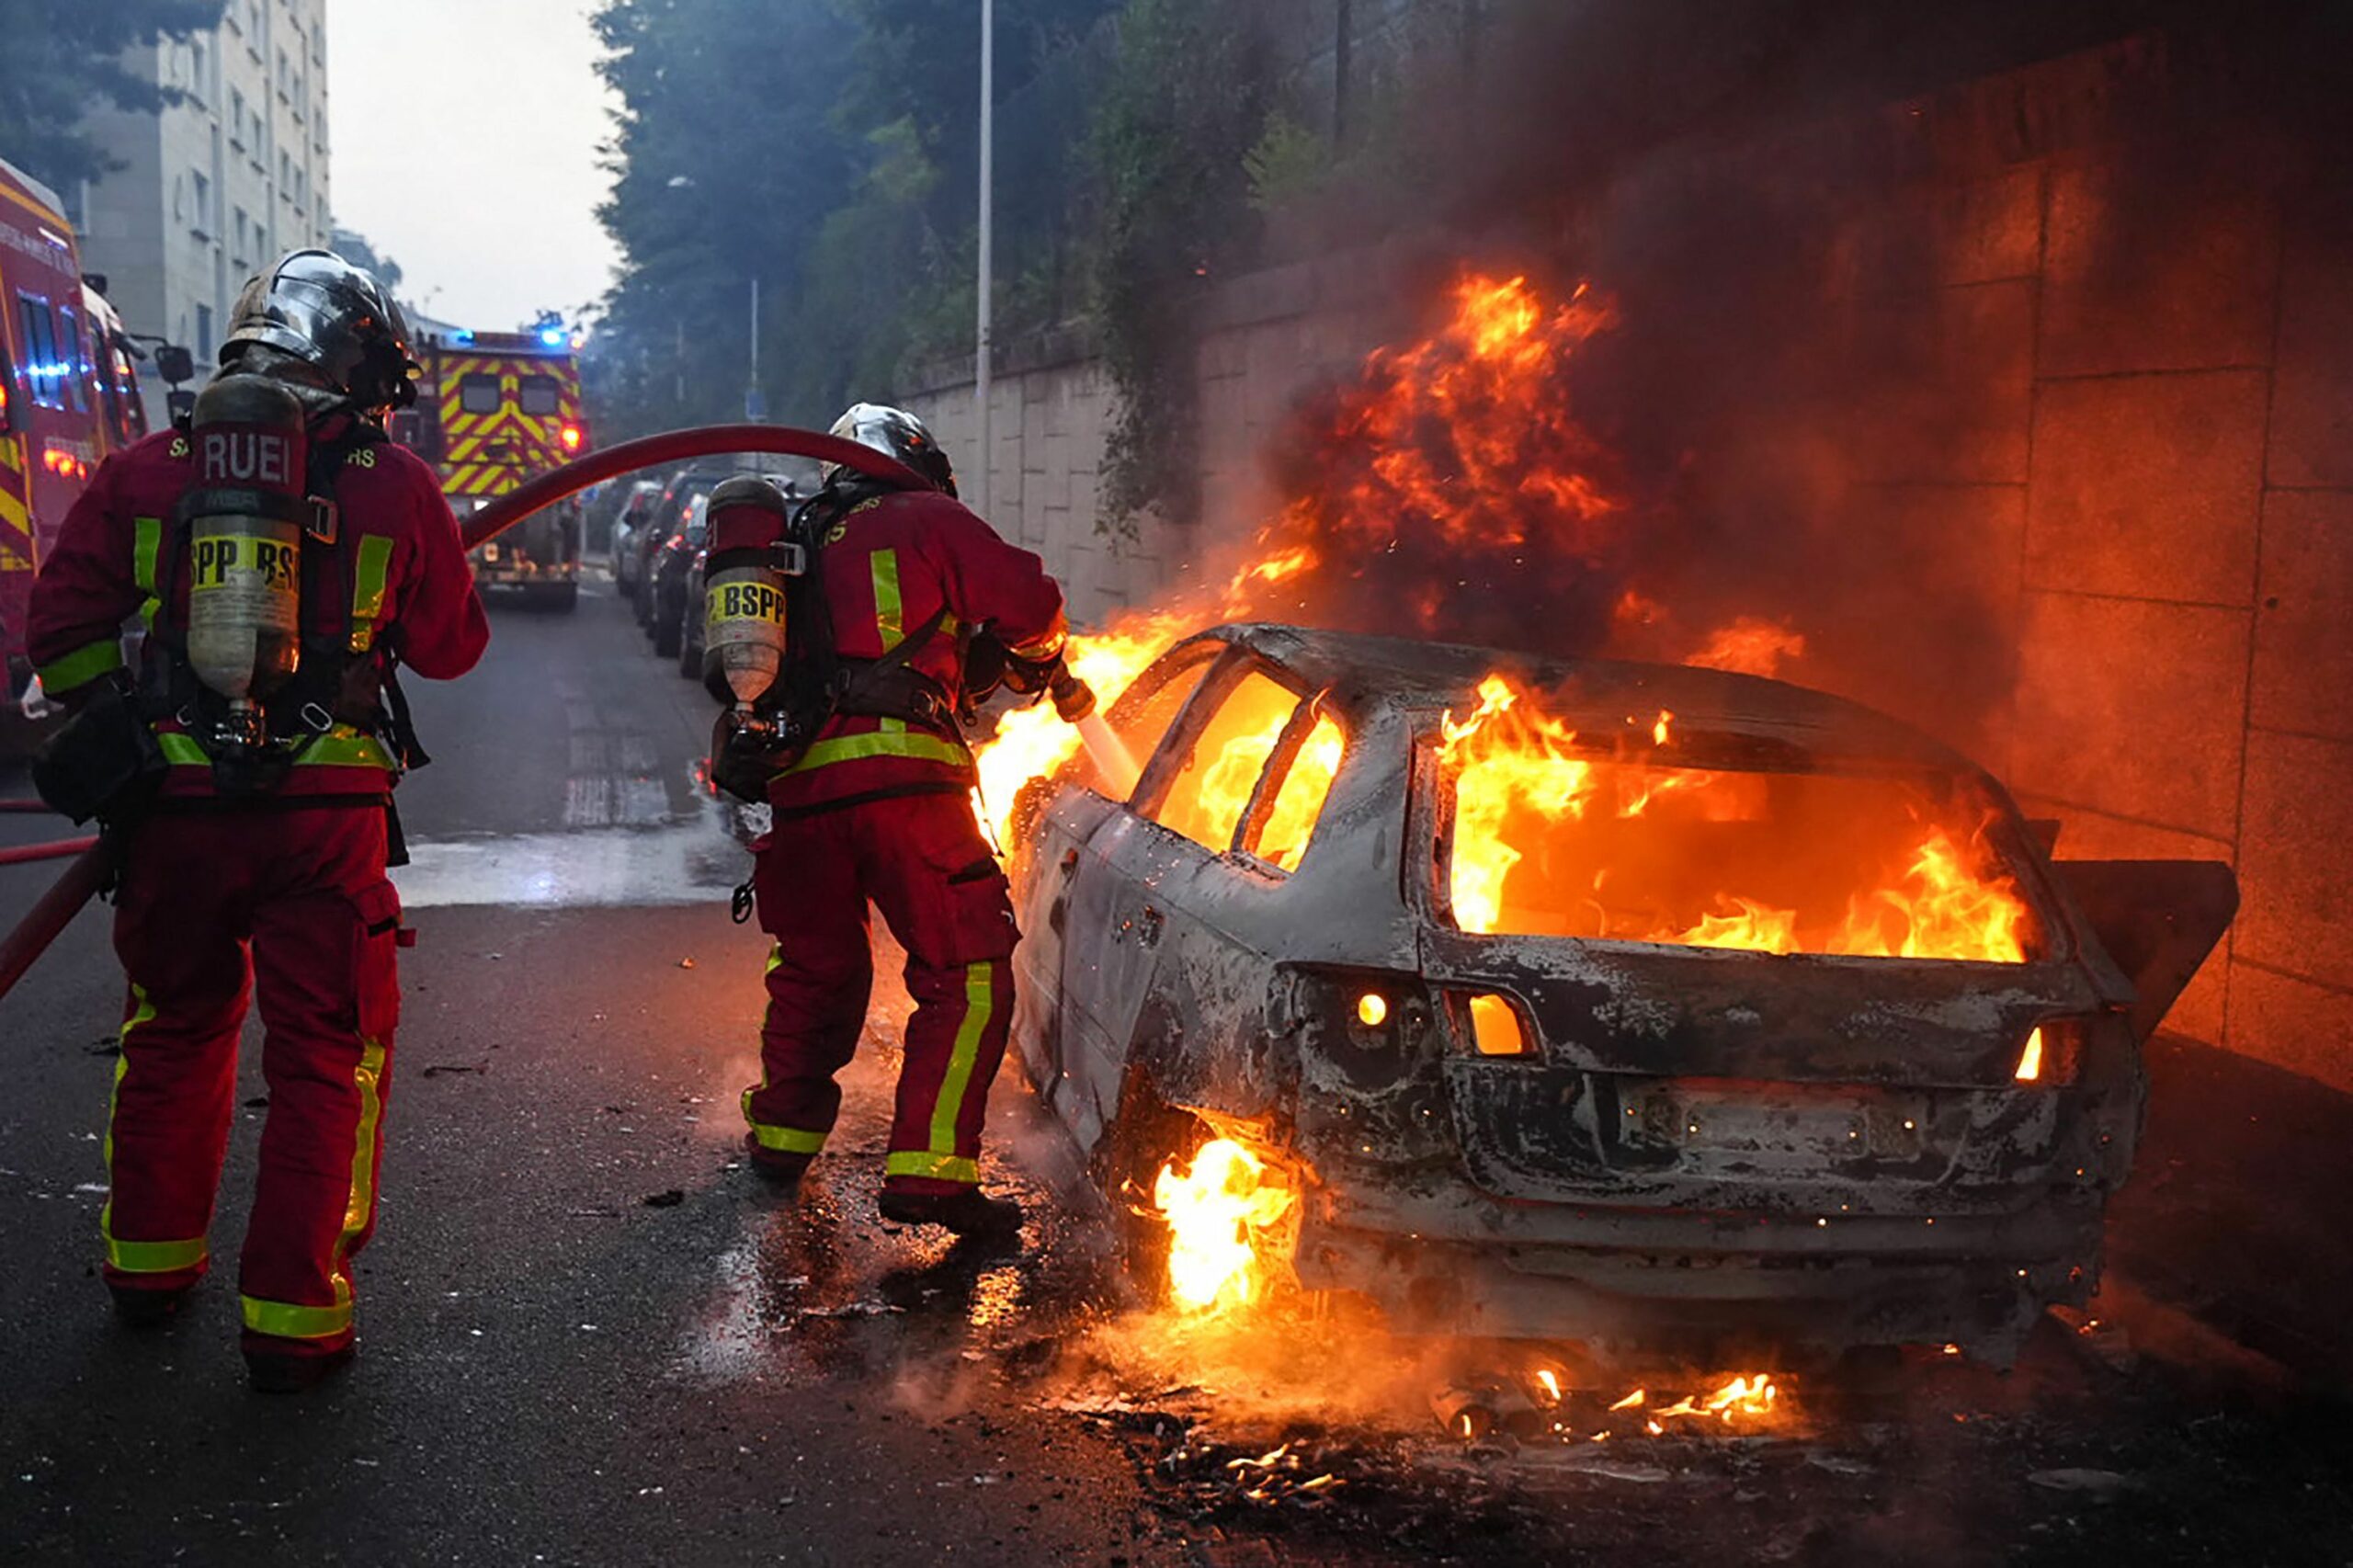 Feuerwehrleute löschen ein brennendes Auto am Rande von Ausschreitungen westlich von Paris.